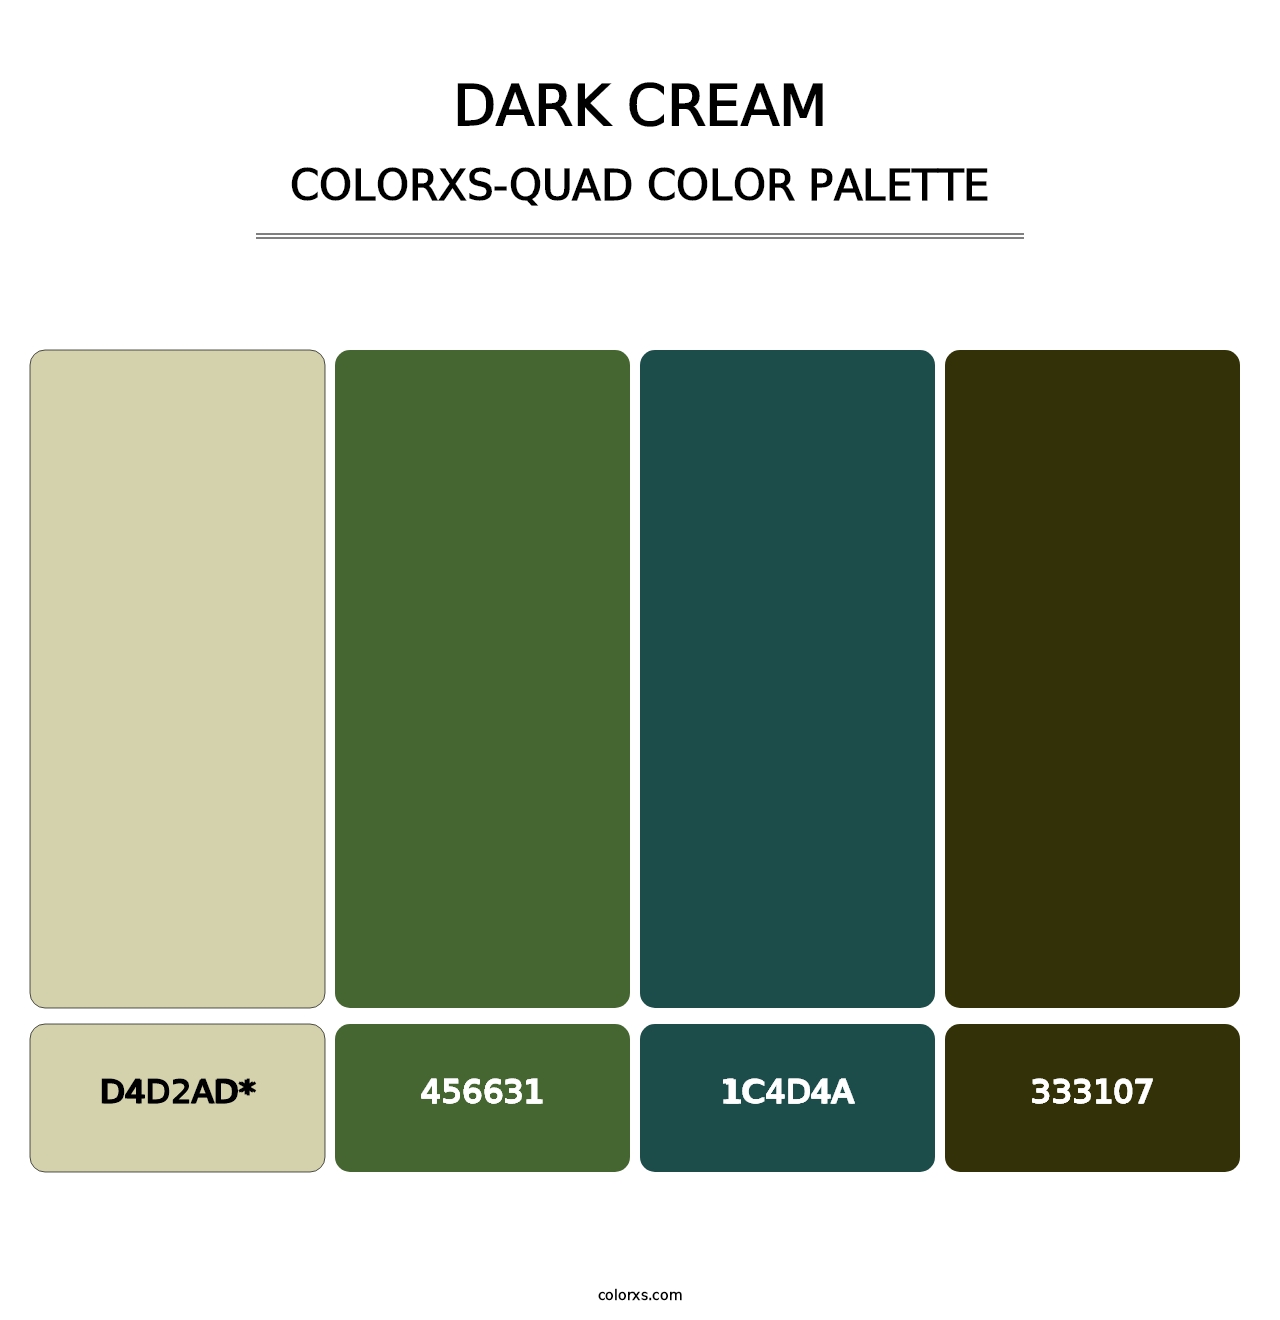 Dark Cream - Colorxs Quad Palette